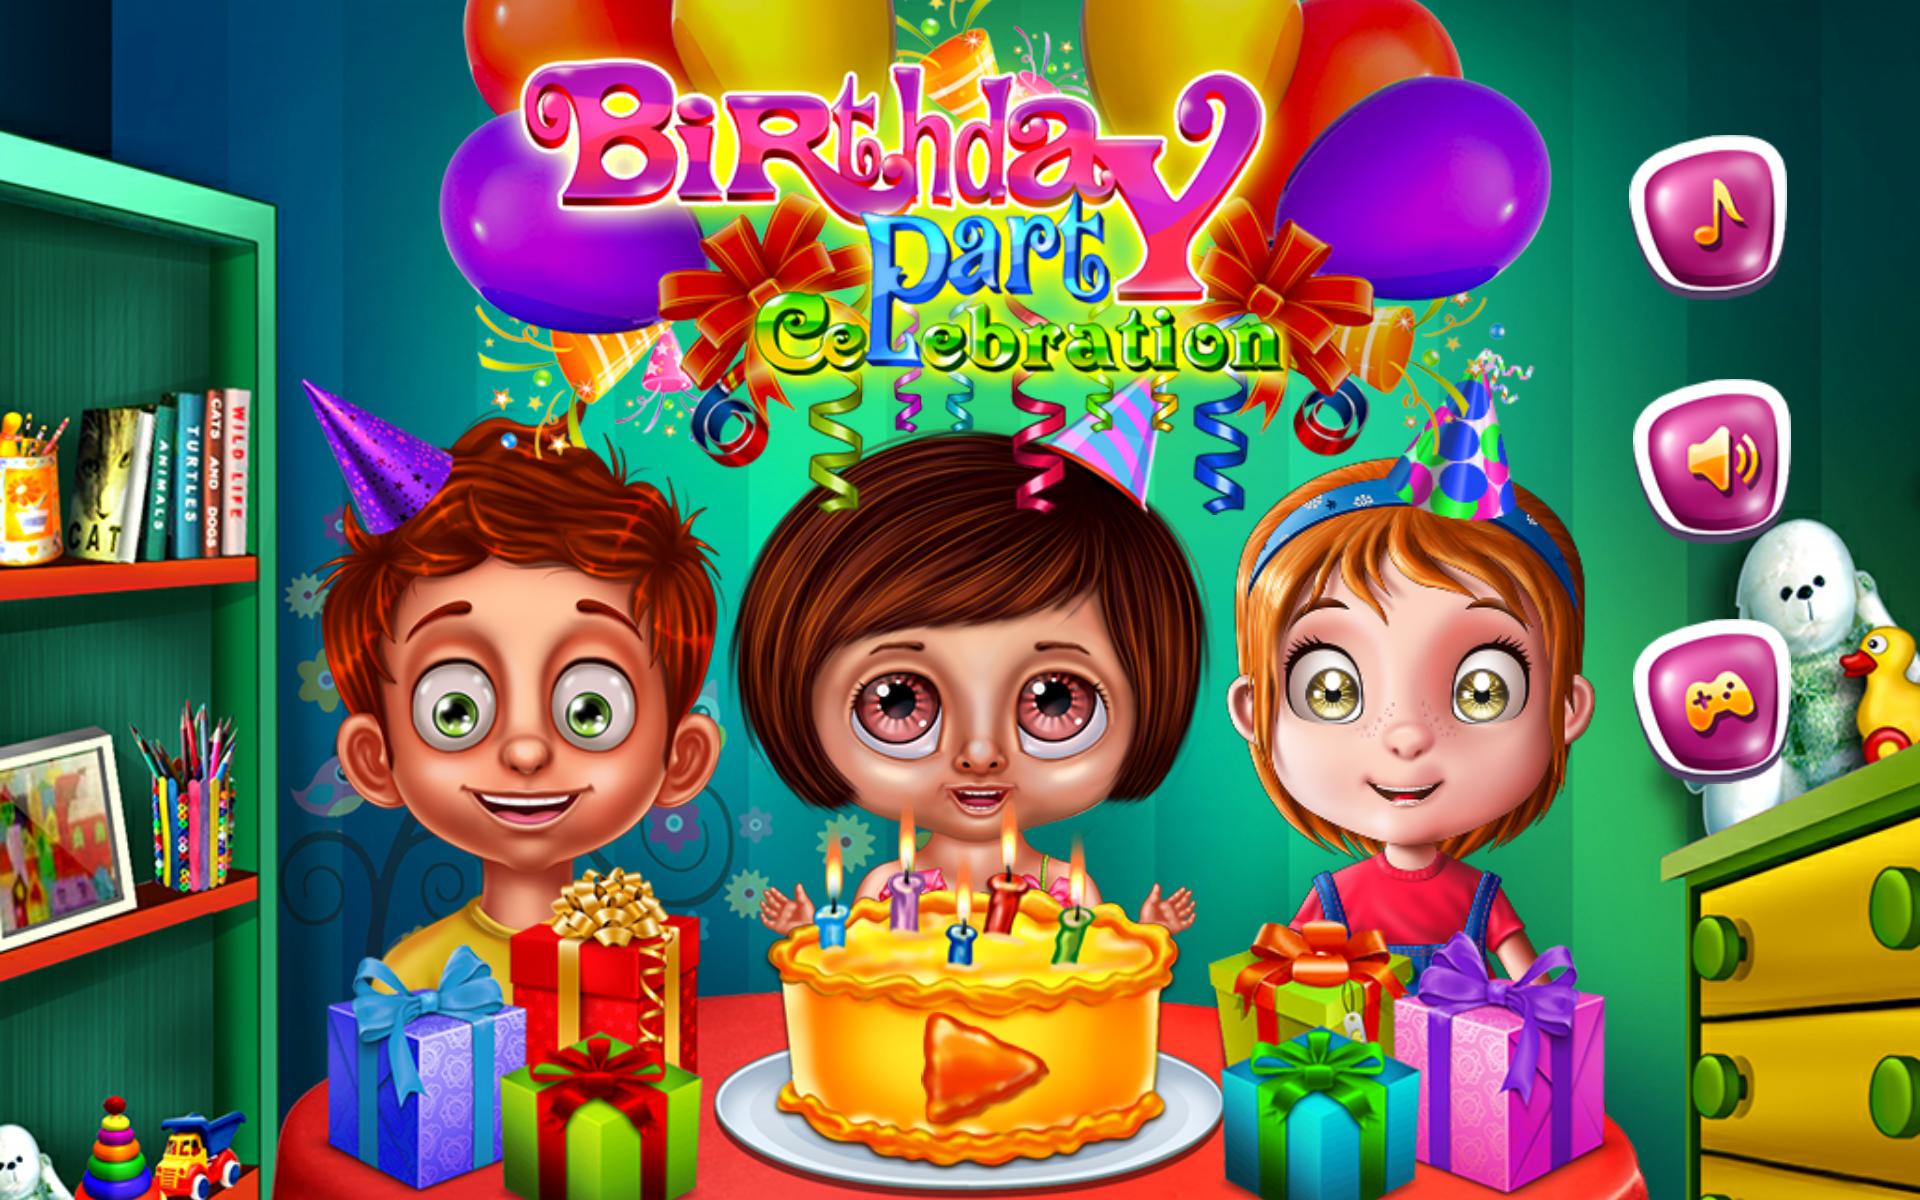 Игра про день рождения. Игры на день рождения. Игры для именинника. Happy Birthday игра. Современные игры для детей на день рождения.